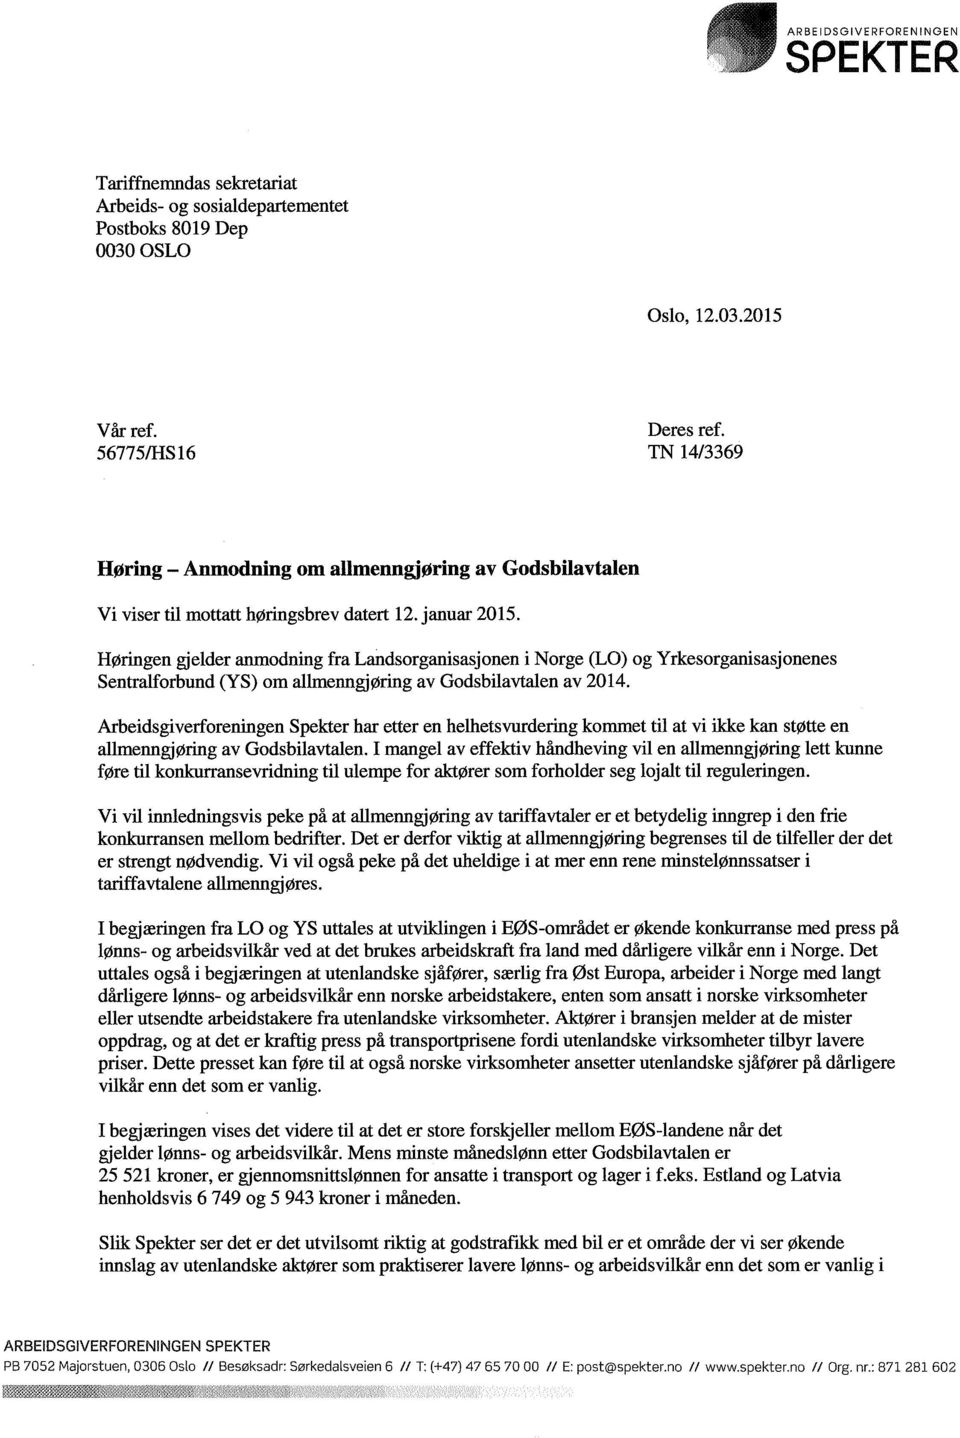 Høringen gjelder anmodning fra Landsorganisasjonen i Norge (LO) og Yrkesorganisasjonenes Sentralforbund (YS) om allmenngjøring av Godsbilavtalen av 2014.